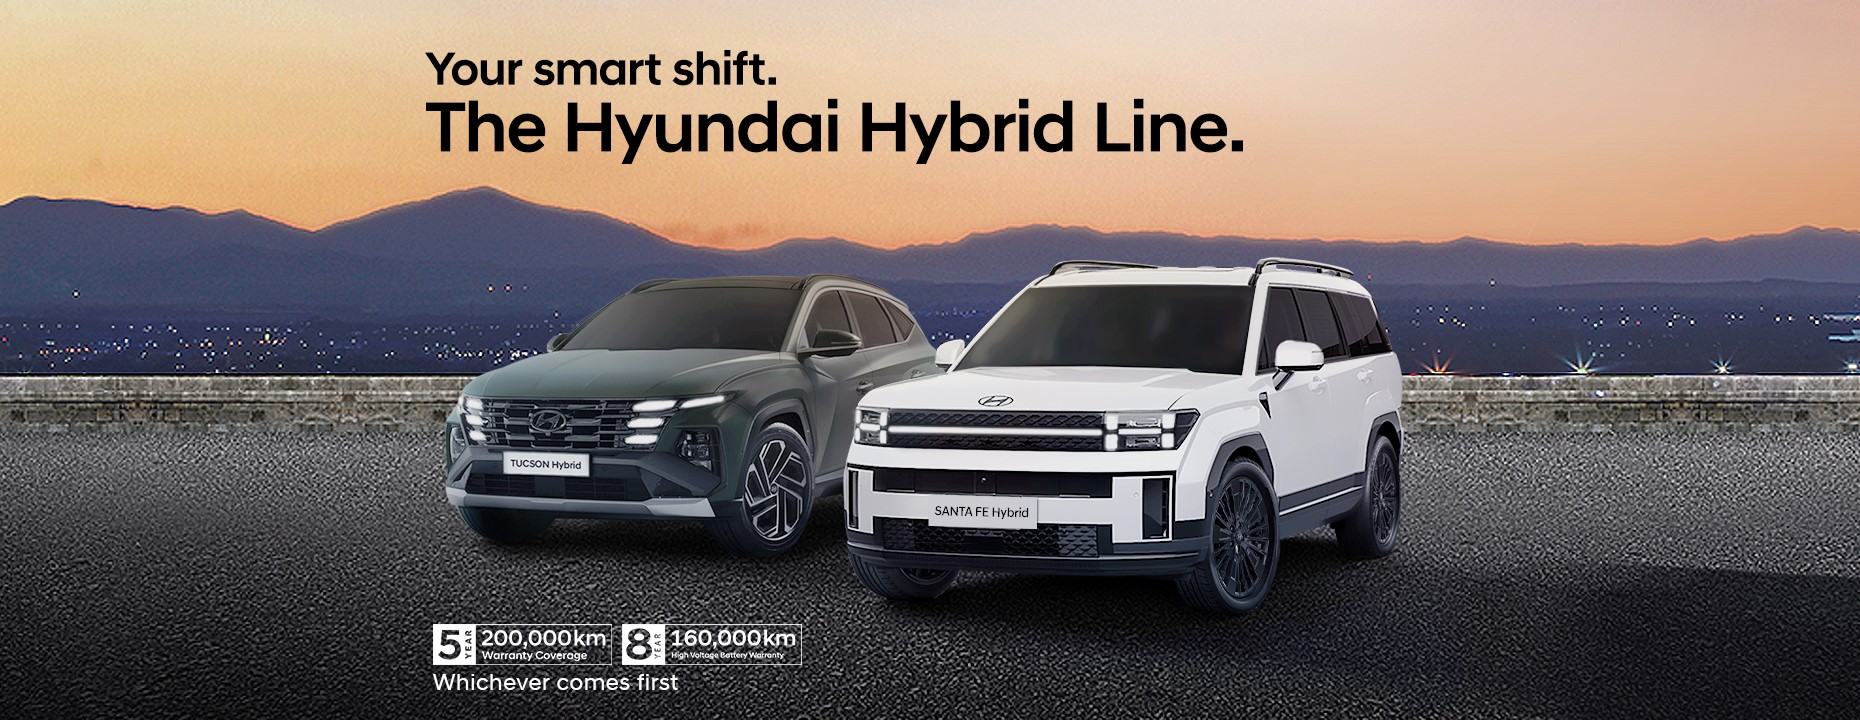 Hyundai hybrid line